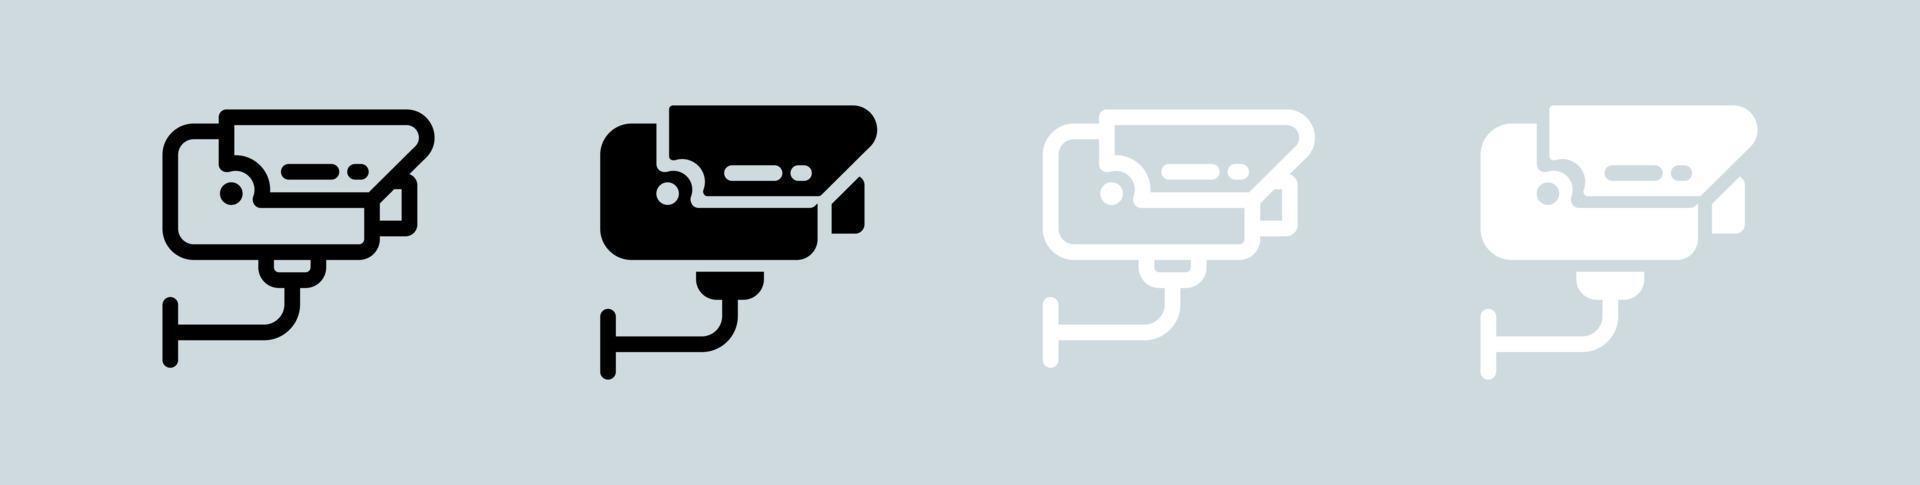 conjunto de iconos de cctv en blanco y negro. cámara de seguridad firma ilustración vectorial. vector